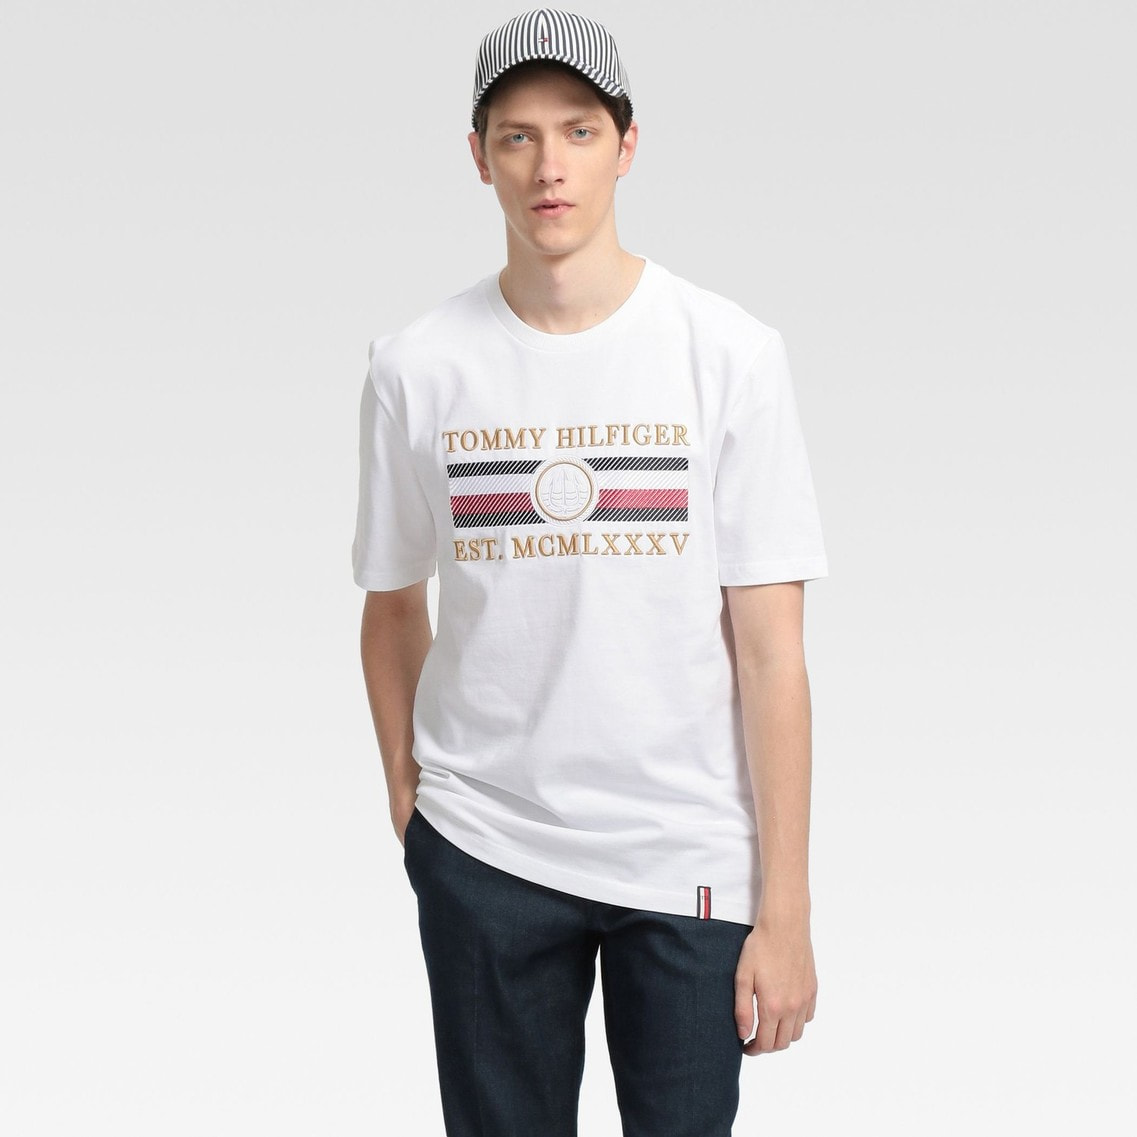 アイコンストライプリラックスフィットtシャツ Tommy Hilfiger Tommy Hilfiger トミー ヒルフィガー 公式オンラインストア